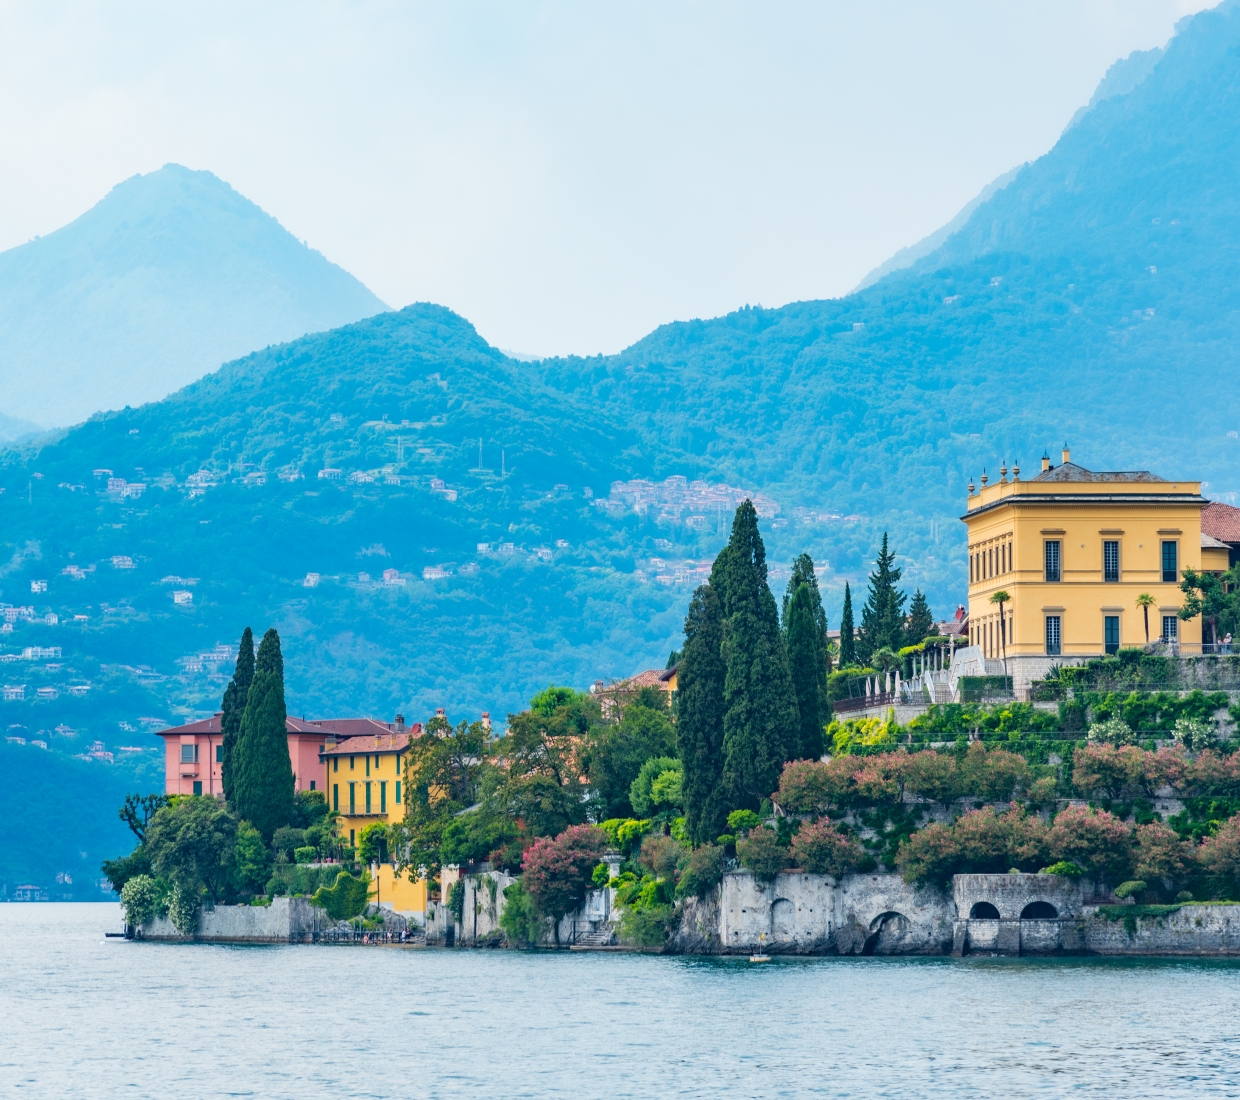 Seleção dos melhores e mais bonitos hotéis e casas de férias em Lago de Como e Maggiore